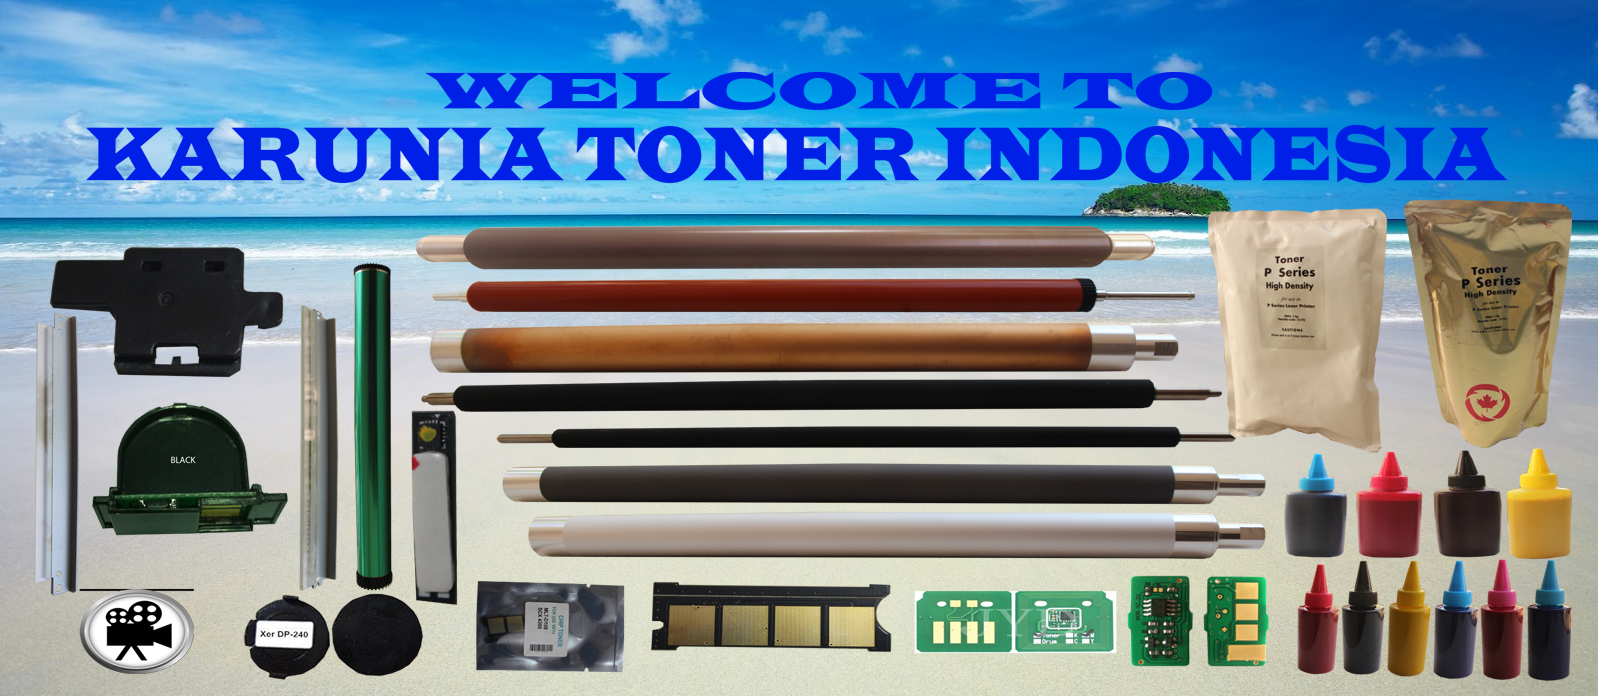 WELCOME TO KARUNIA TONER INDONESIA